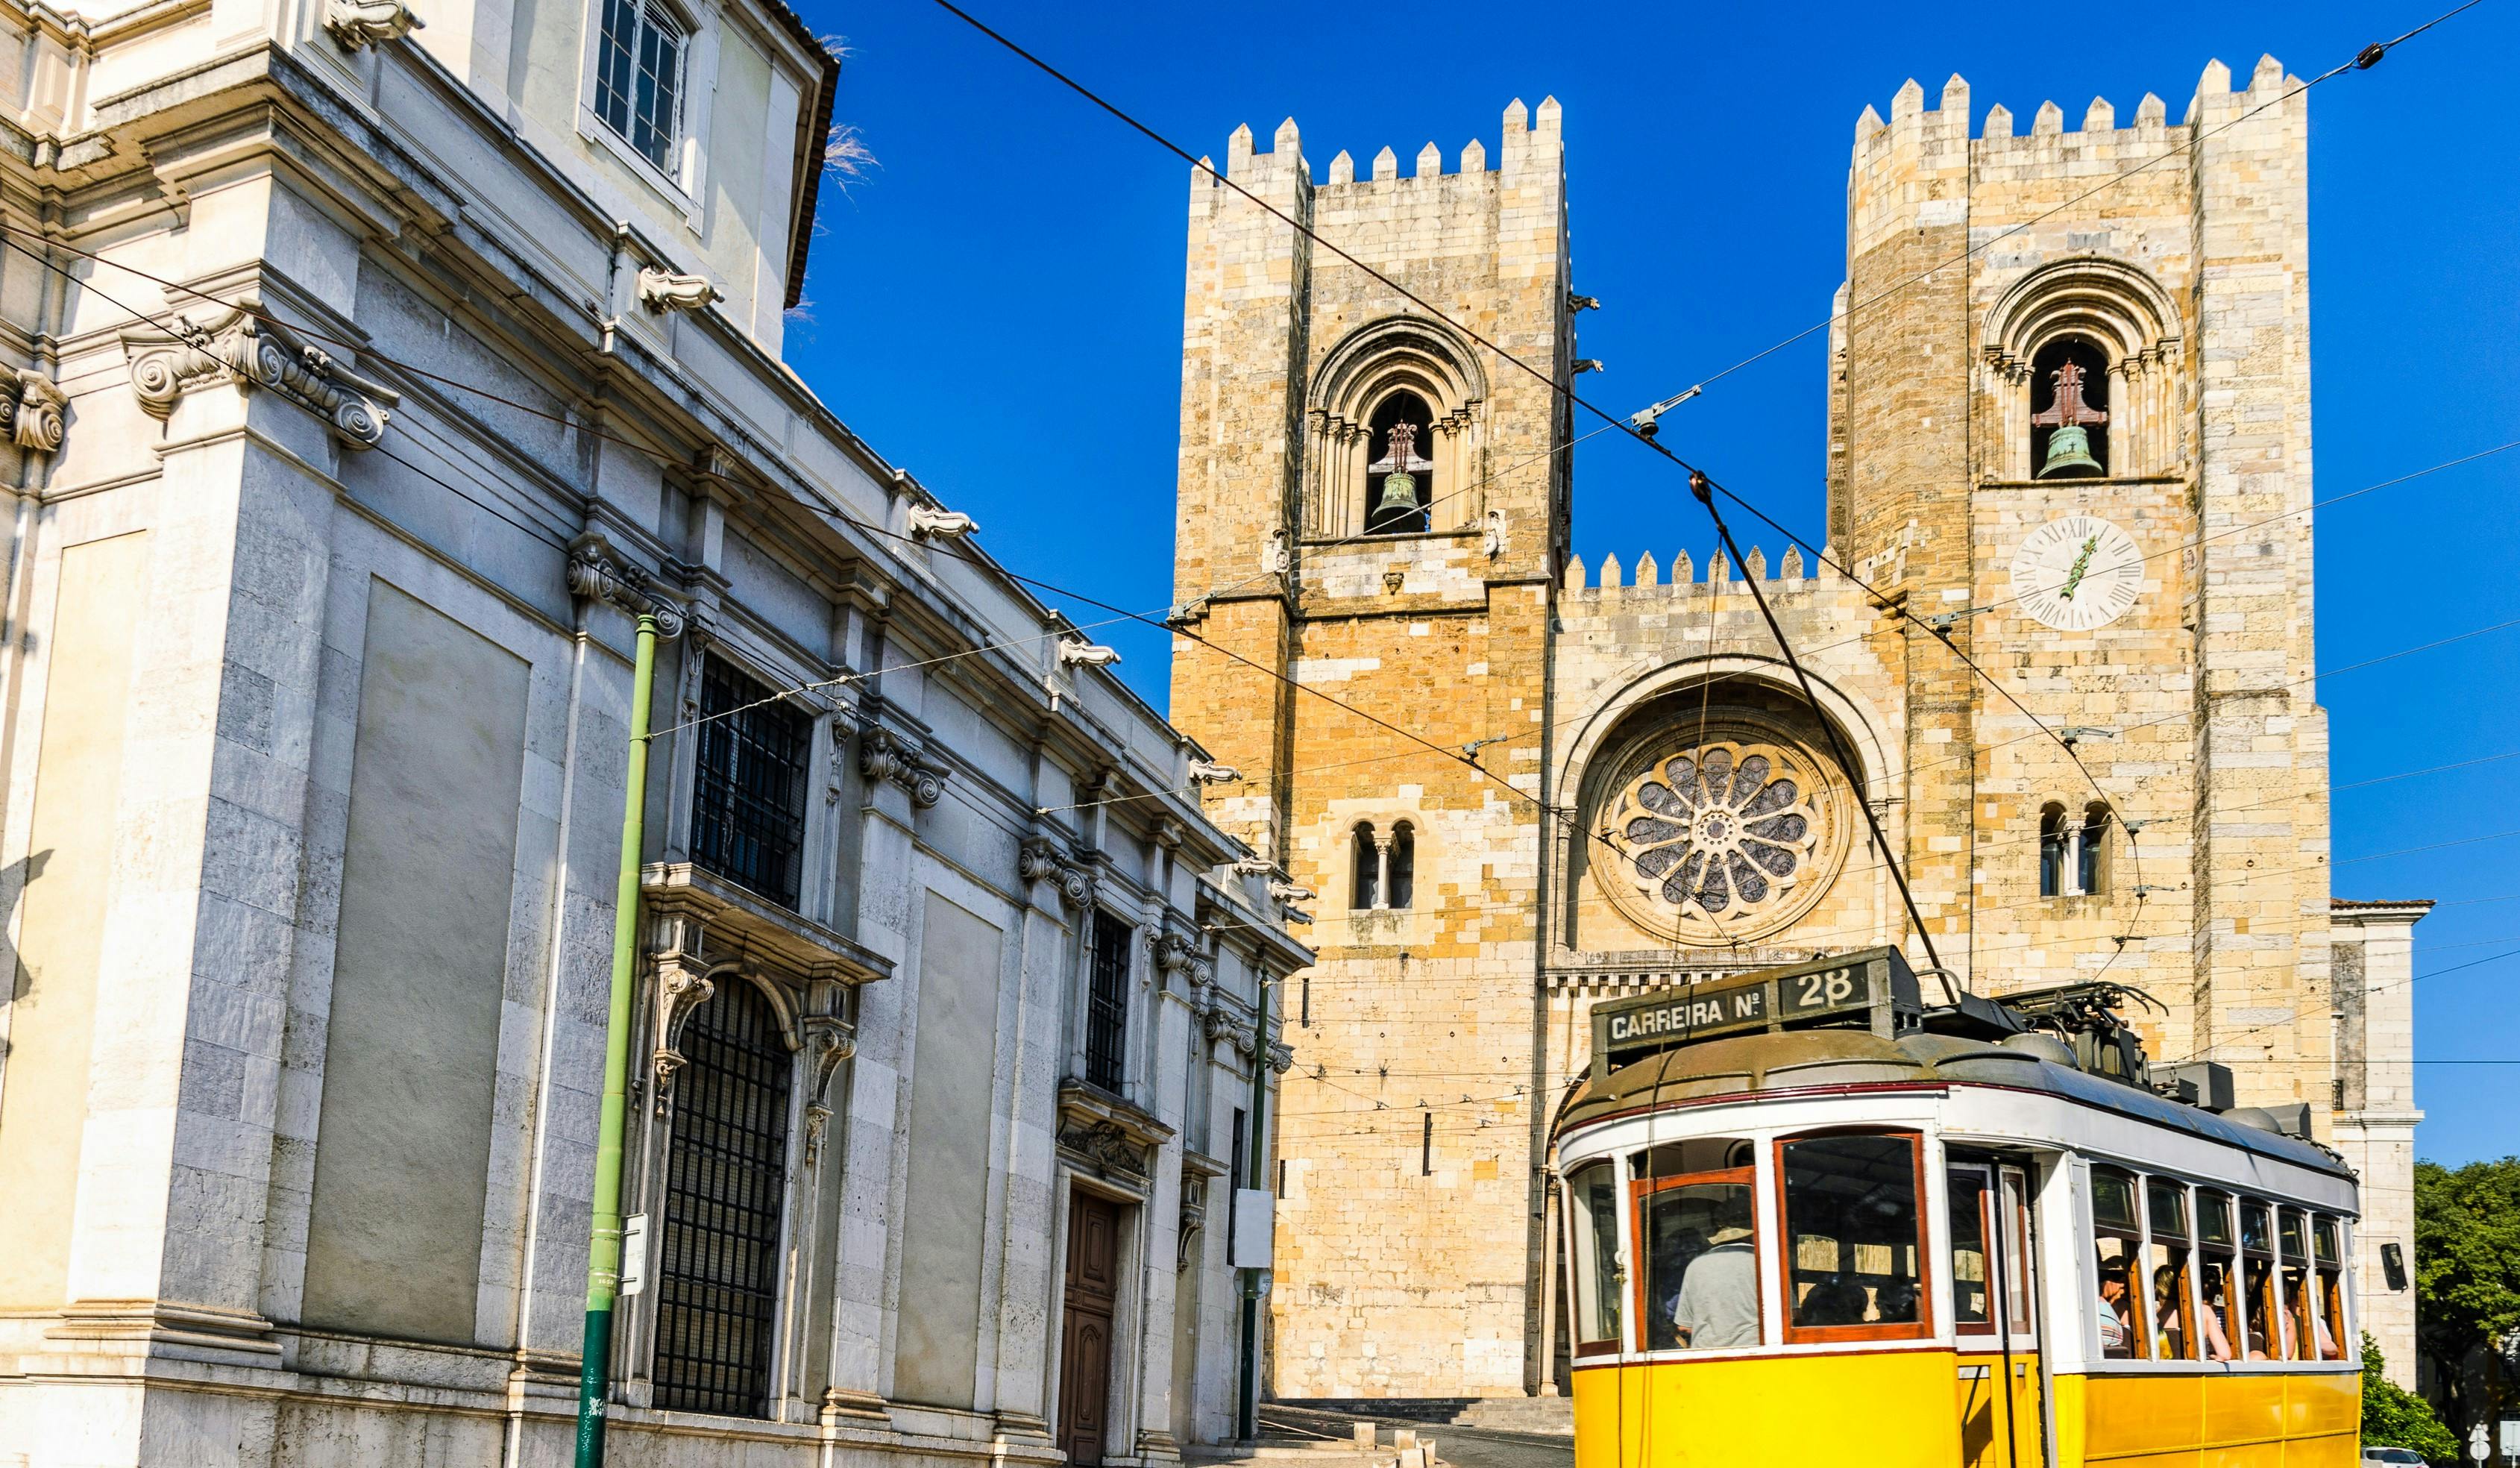 Excursão medieval de Segway™ em Lisboa